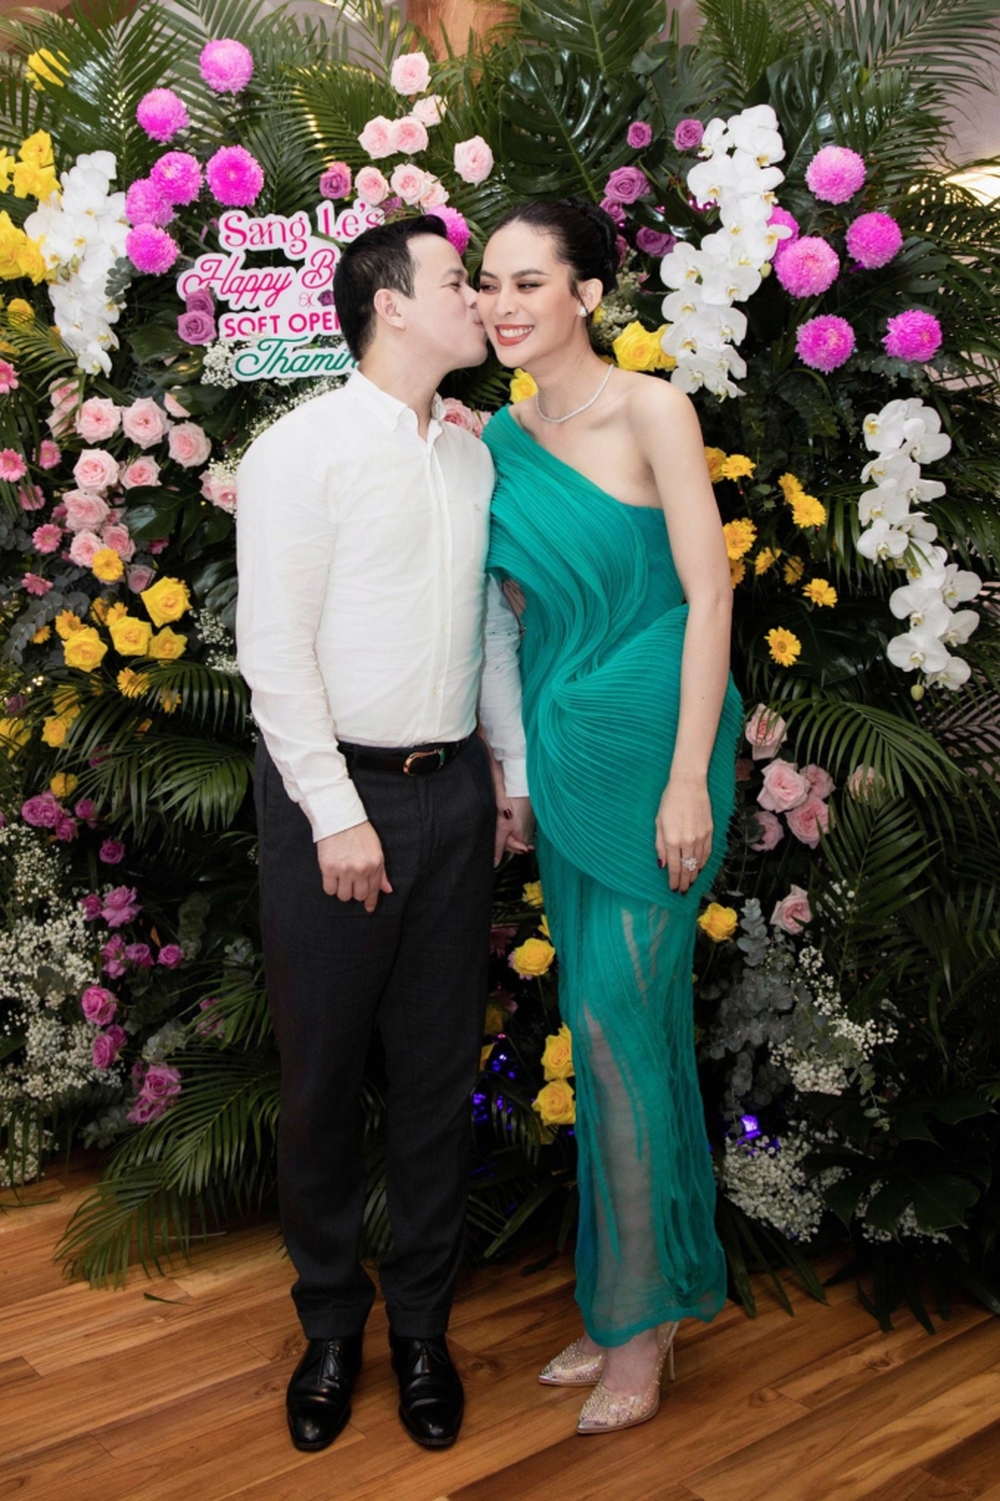 Dàn sao tới chúc mừng sinh nhật Sang Lê, chồng doanh nhân tình tứ tặng nụ hôn - Ảnh 4.